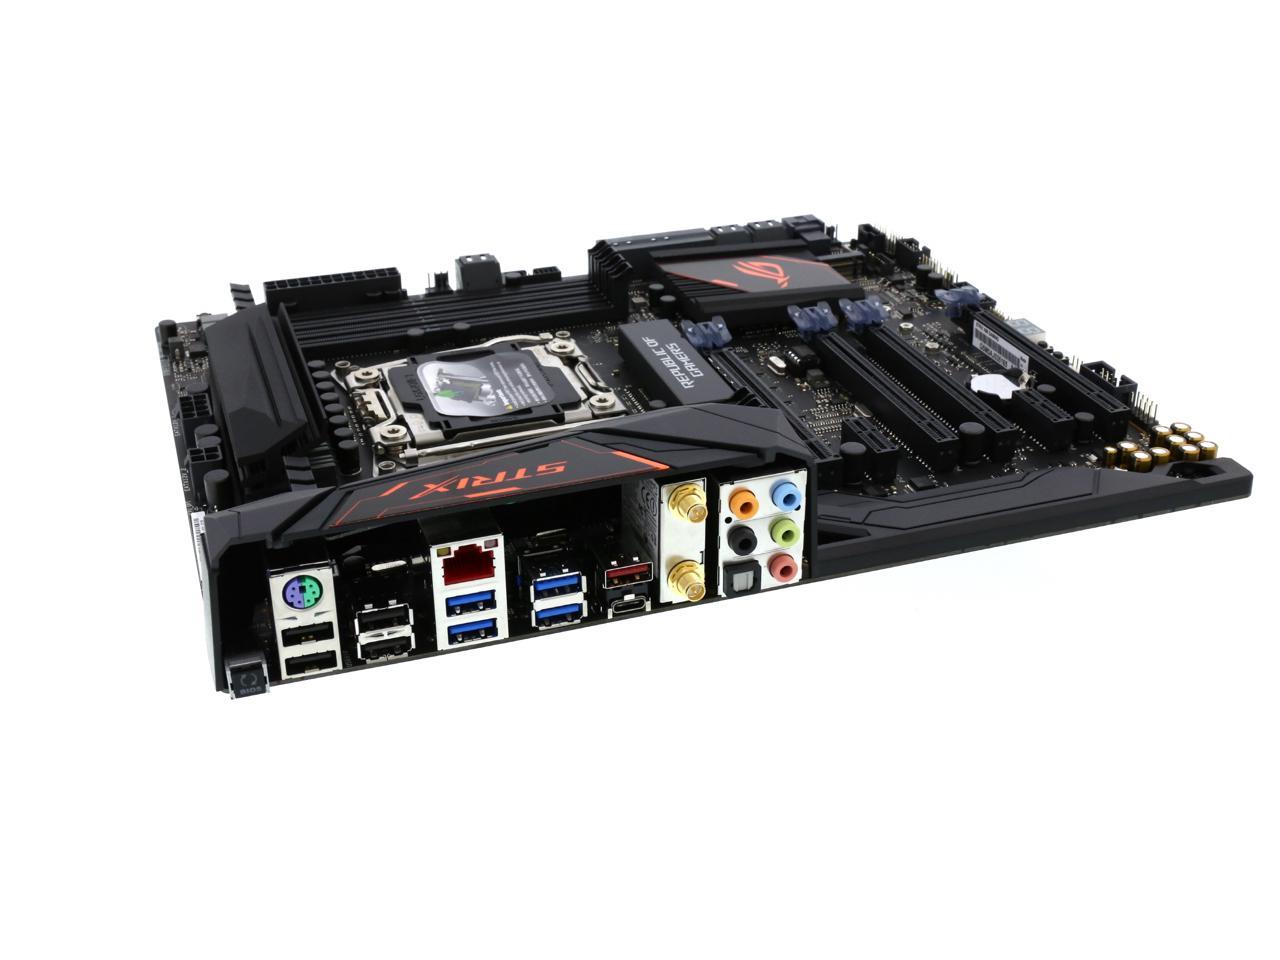 ASUS ROG STRIX X99 GAMING LGA 2011-v3 Intel X99 SATA 6Gb/s USB 3.1 ATX  Intel Motherboard